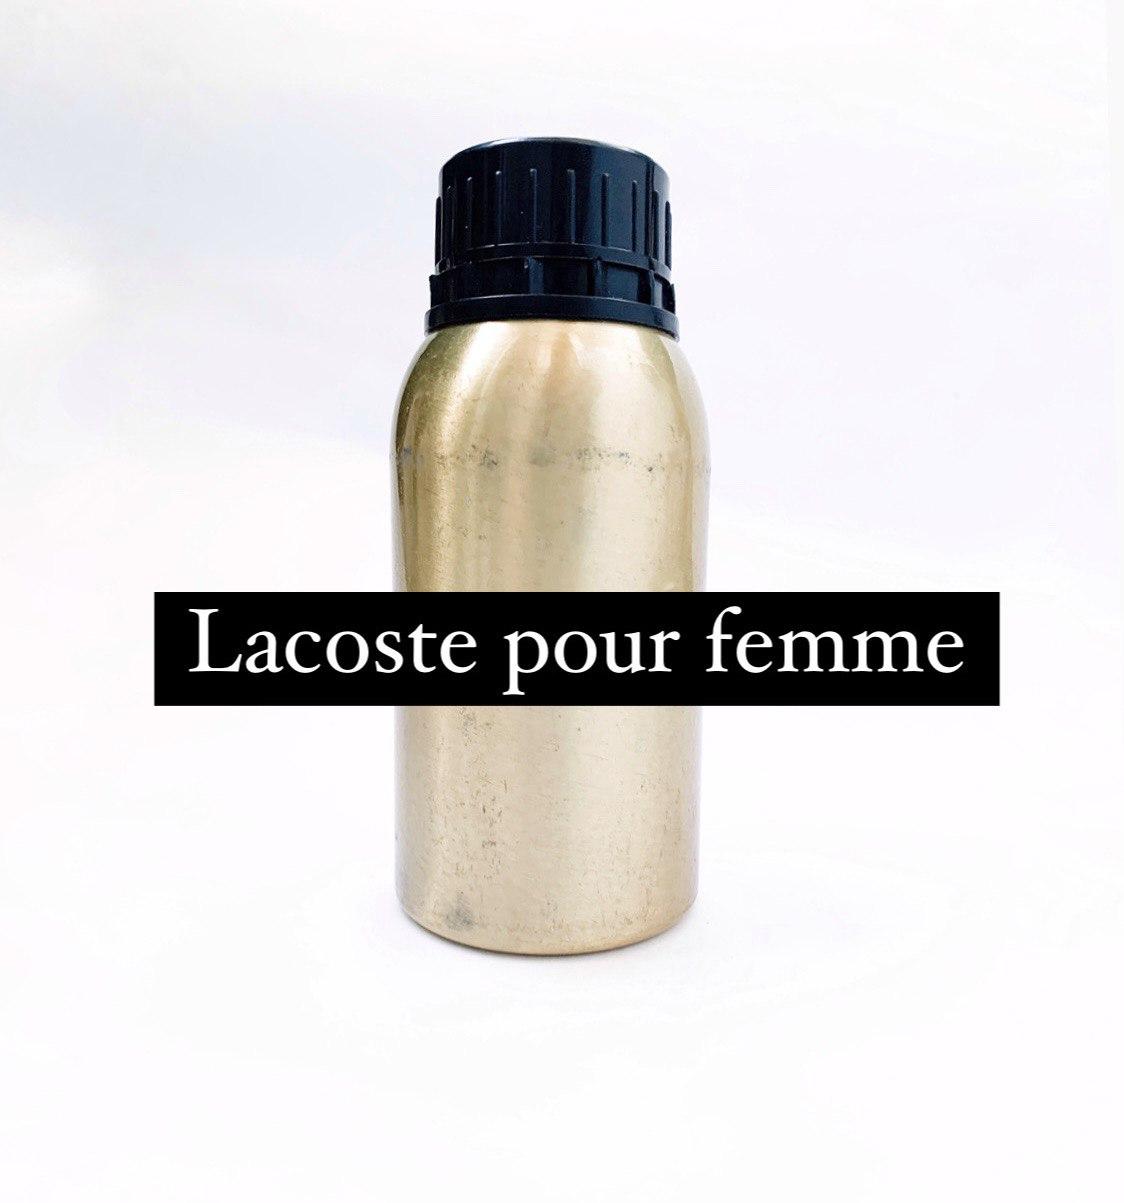 Елітна парфумерна олія Lacoste Pour Femme, жіночі олійні парфуми Лакост пур Фем